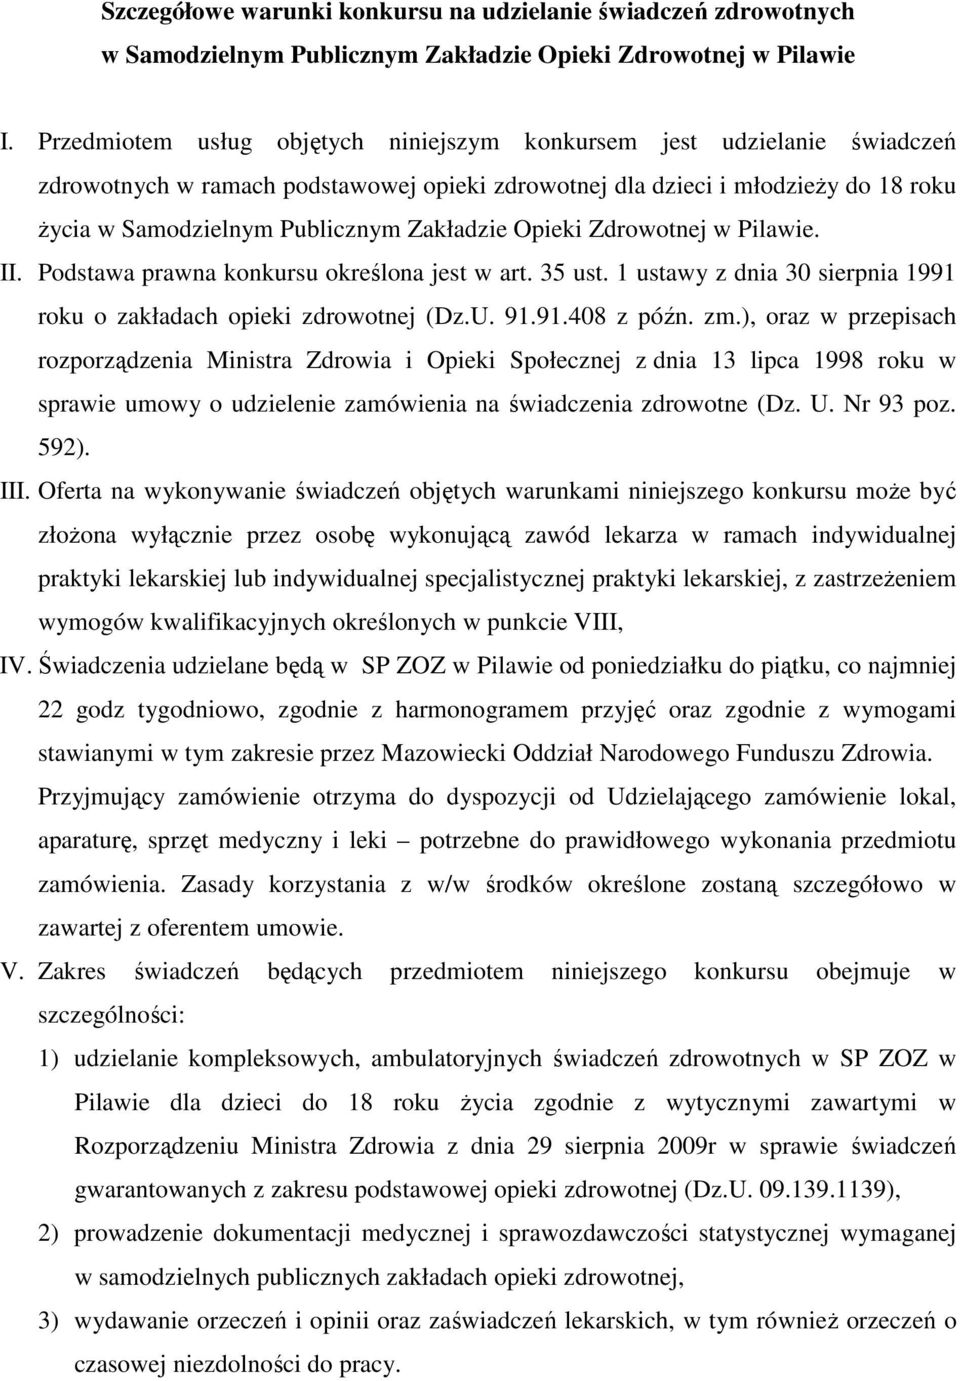 Zakładzie Opieki Zdrowotnej w Pilawie. II. Podstawa prawna konkursu określona jest w art. 35 ust. 1 ustawy z dnia 30 sierpnia 1991 roku o zakładach opieki zdrowotnej (Dz.U. 91.91.408 z późn. zm.